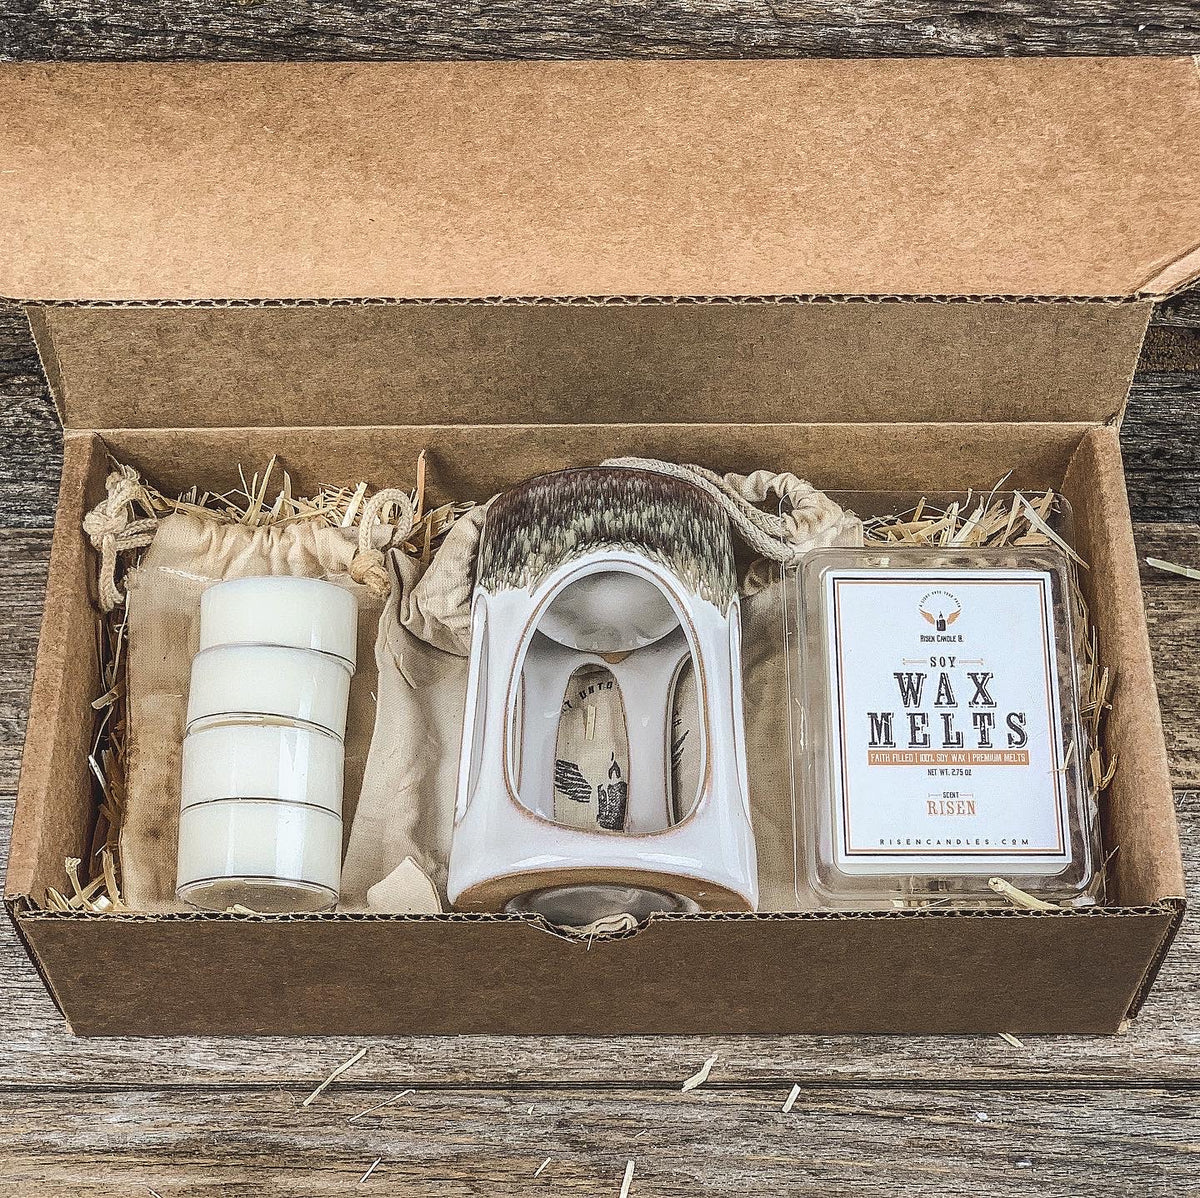 Pan Aroma Wax Melt Burner Kit Lime & Ginger - Aromatherapy Set